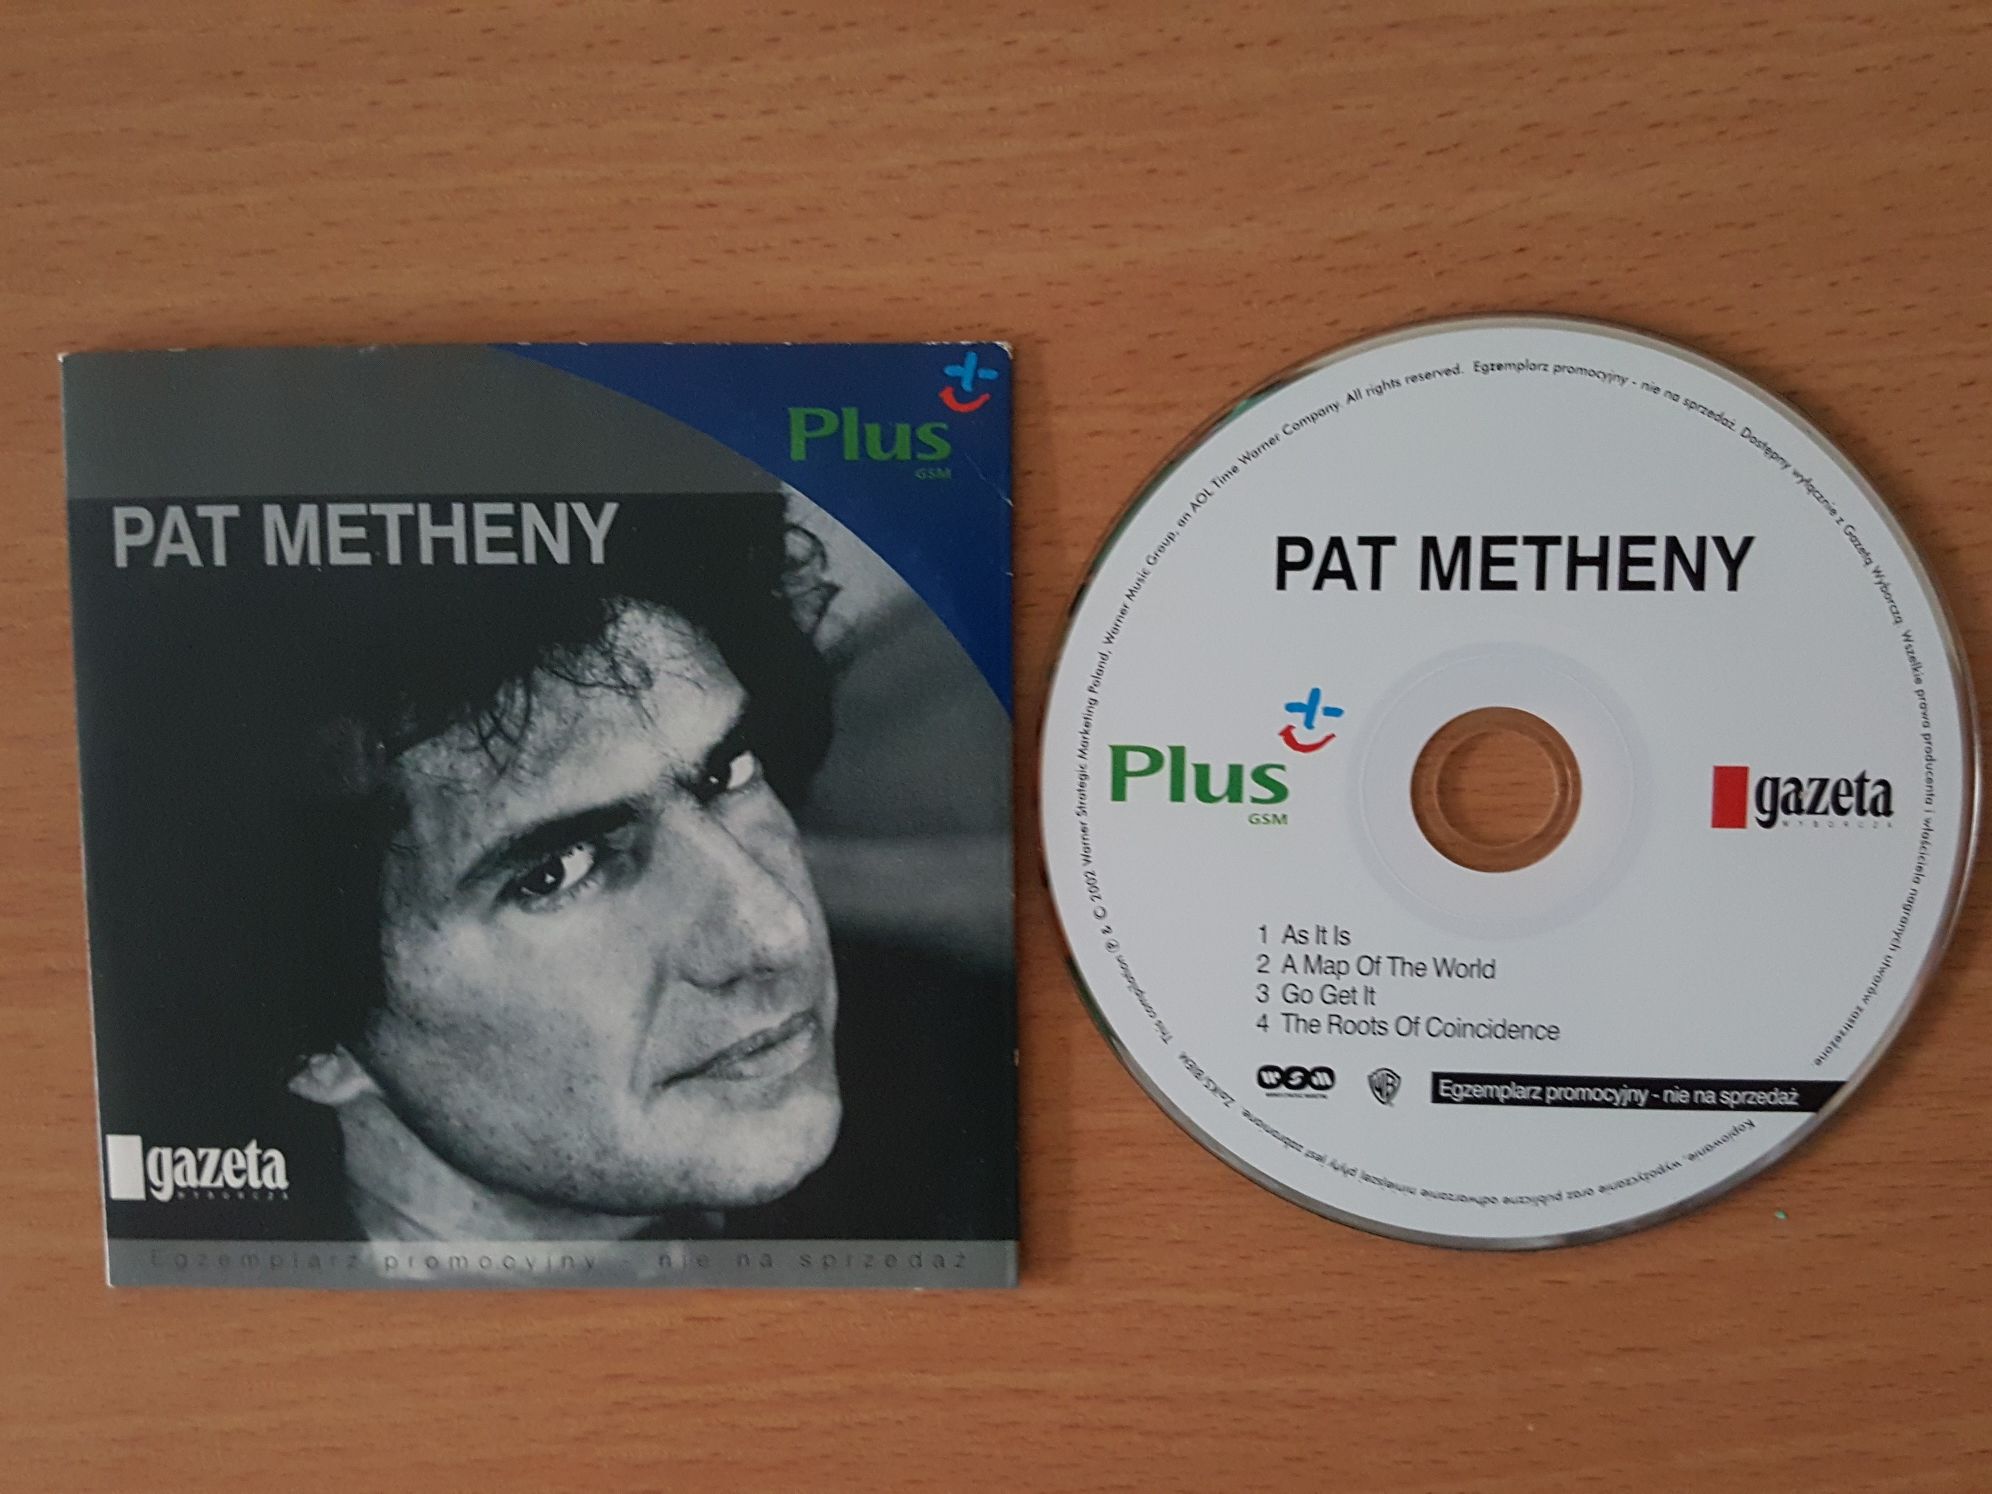 BIOGRAFIE znanych, kolekcja 7 płyt VCD/DVD + gratis Pat Metheny